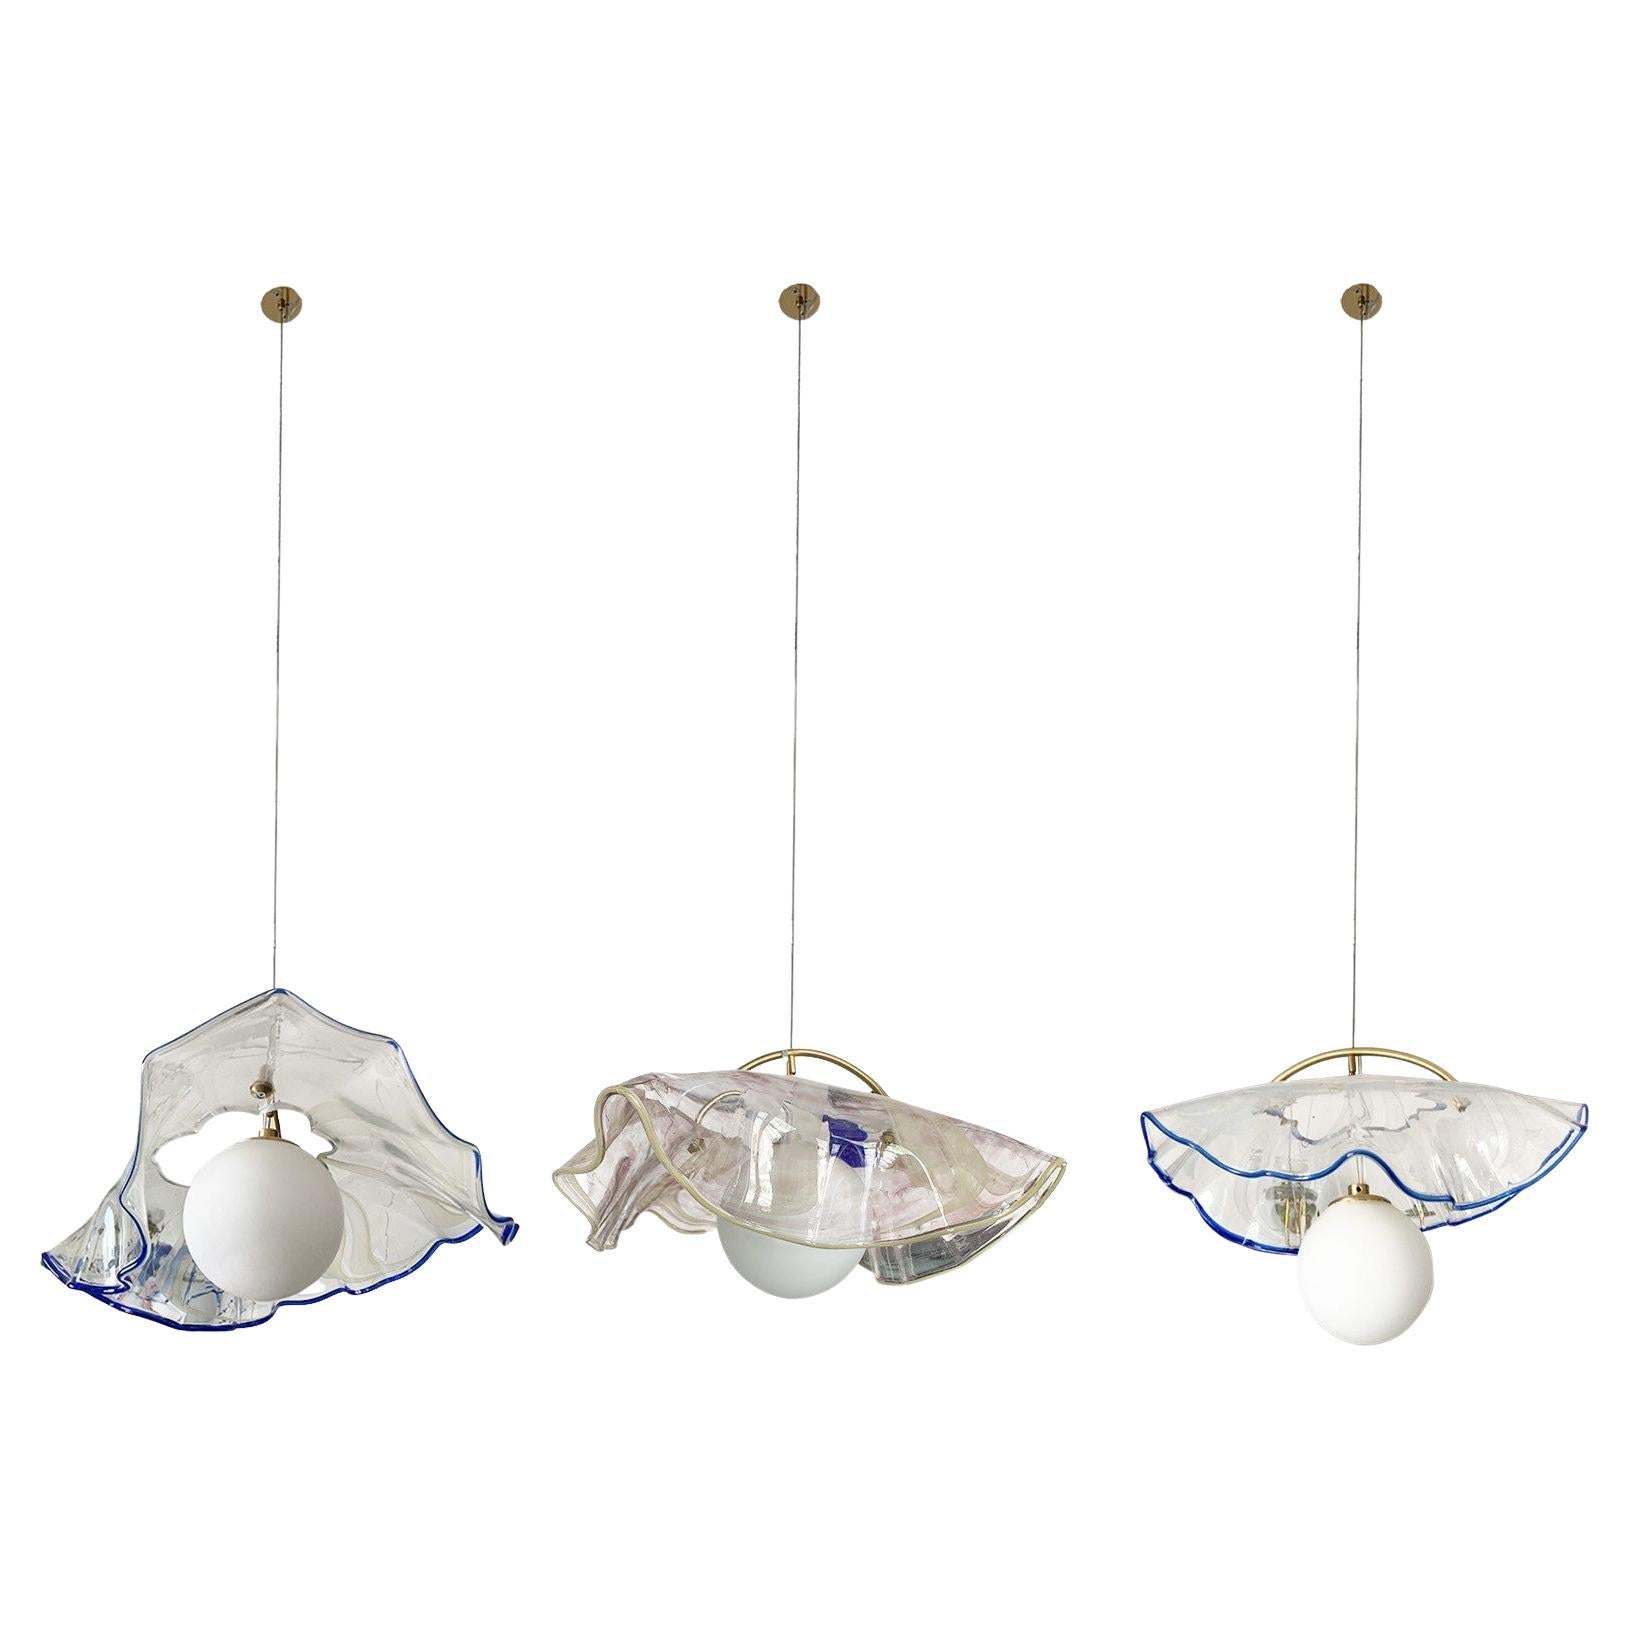 jellyfish pendant lamp by Sema Topaloglu